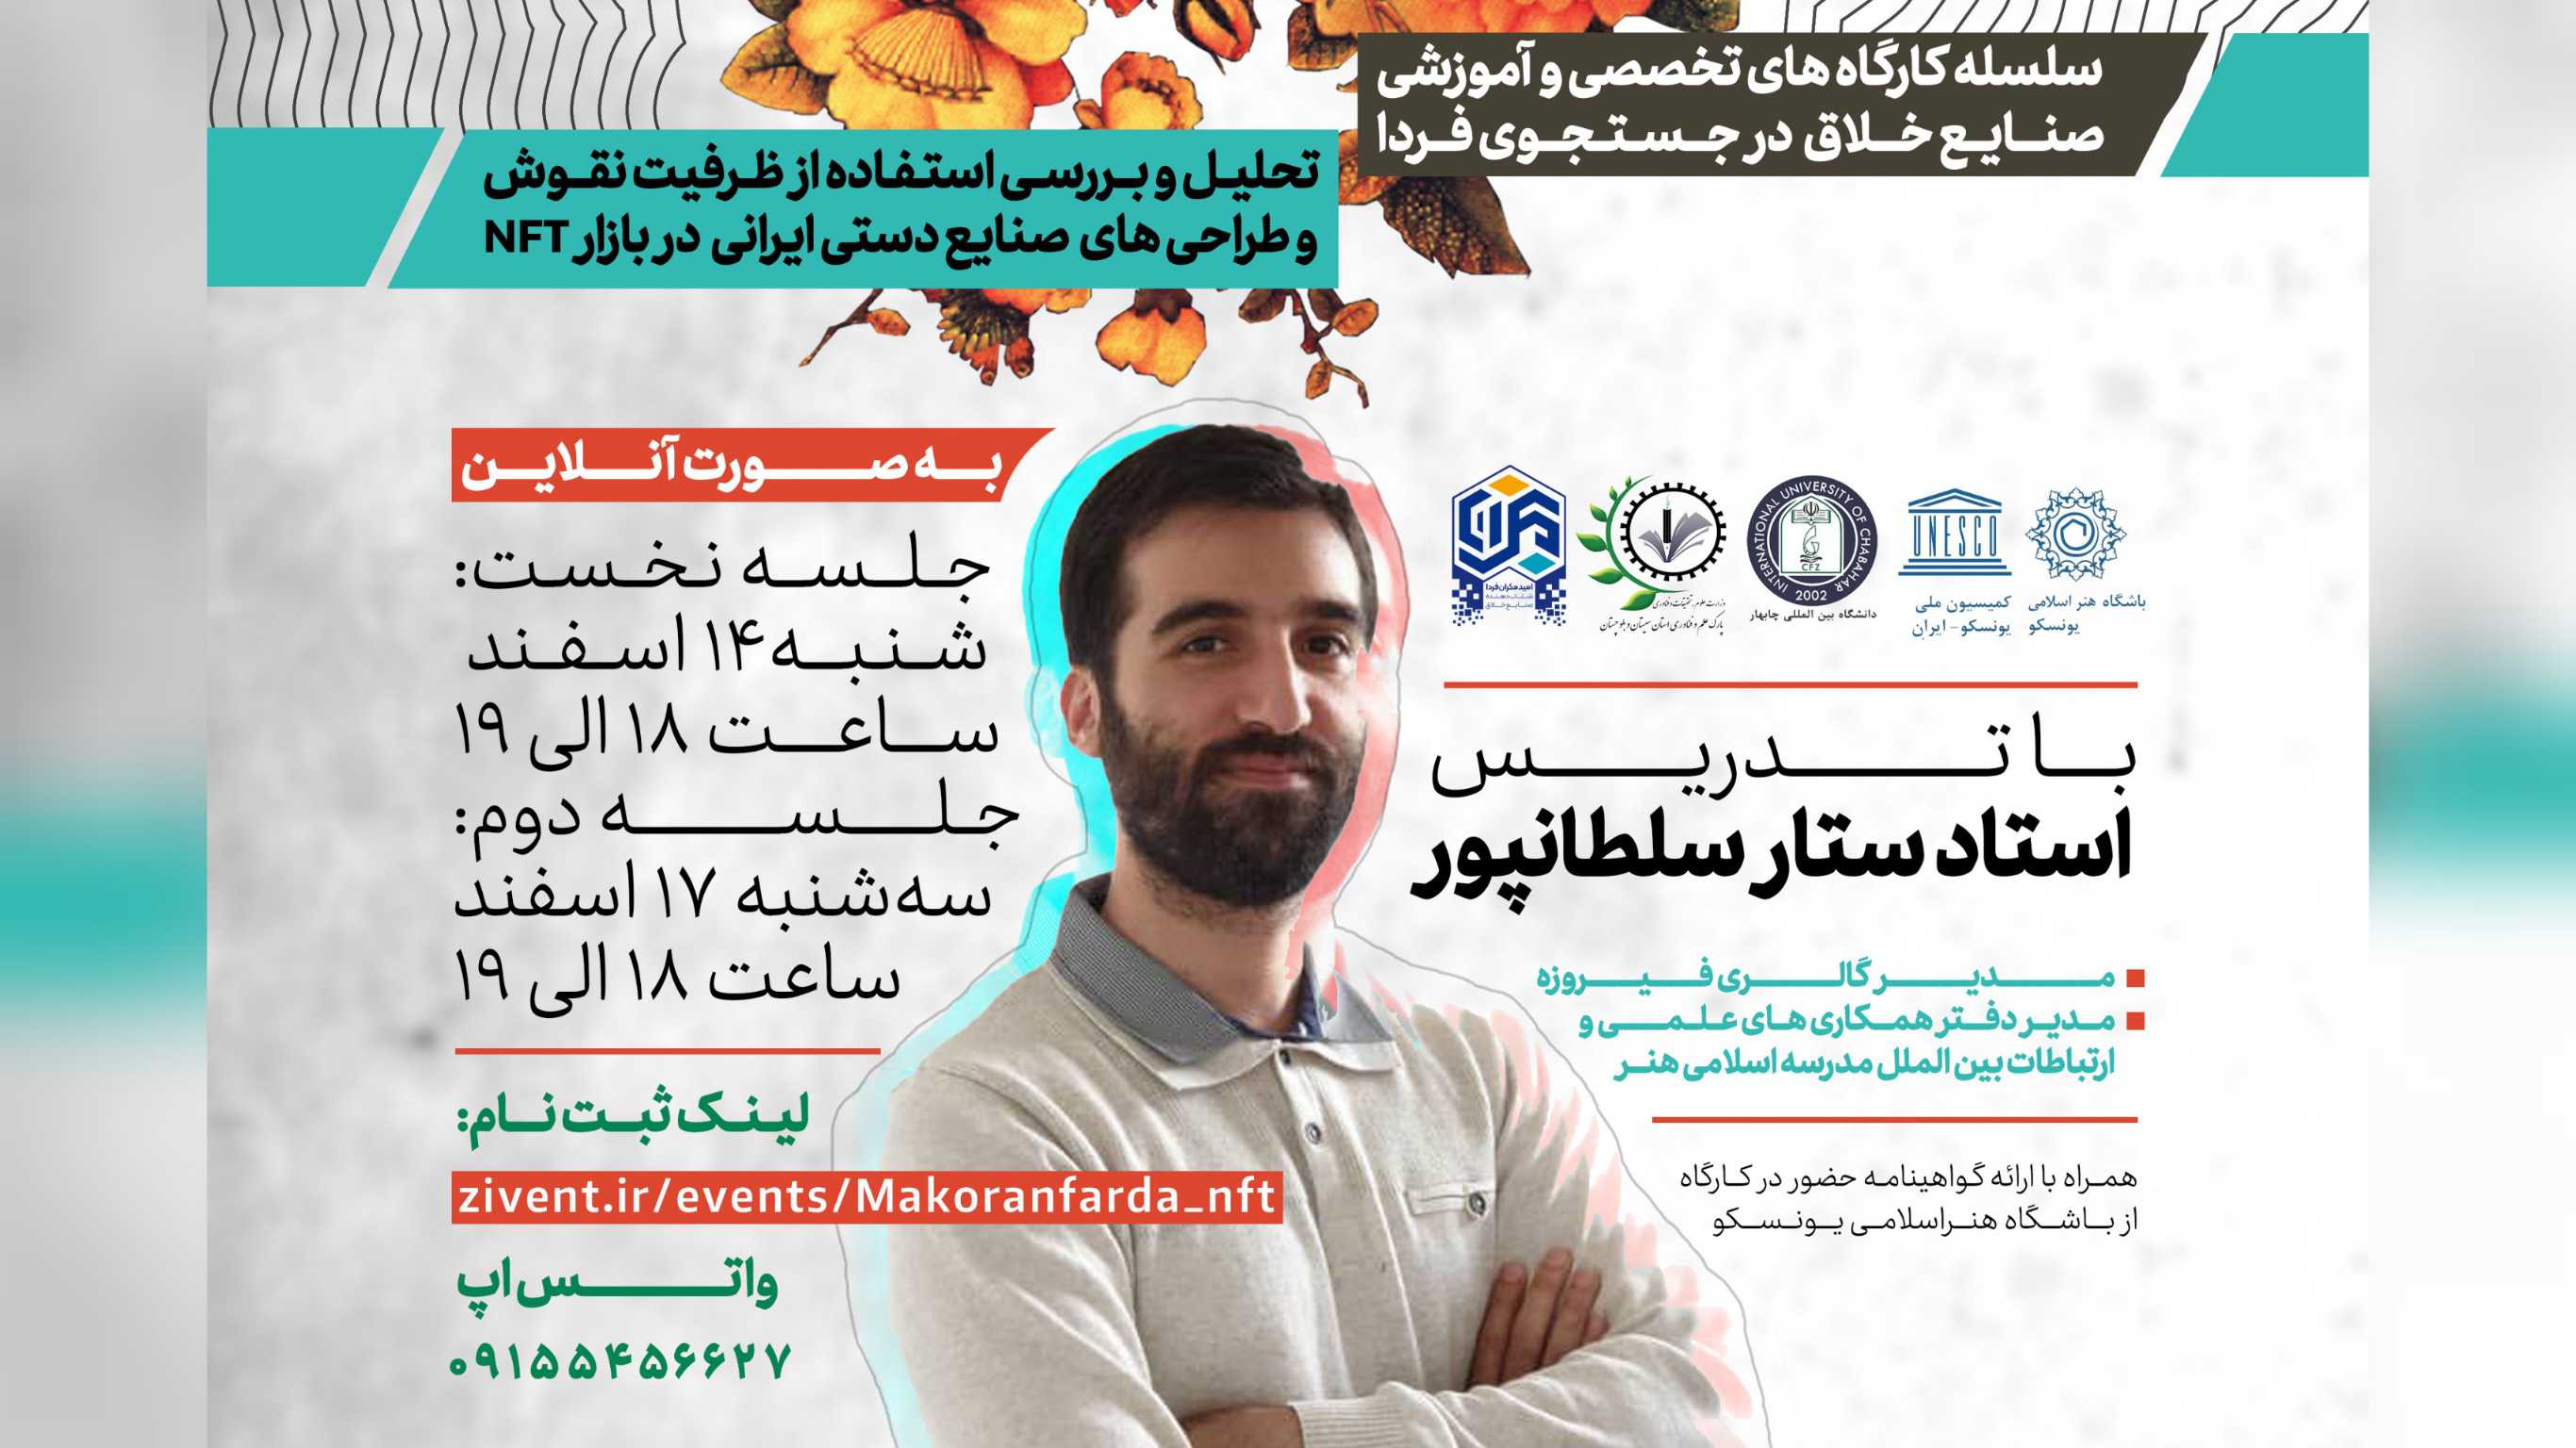 تحلیل و بررسی استفاده از ظرفیت نقوش و طراحی های صنایع دستی ایرانی در بازار NFT